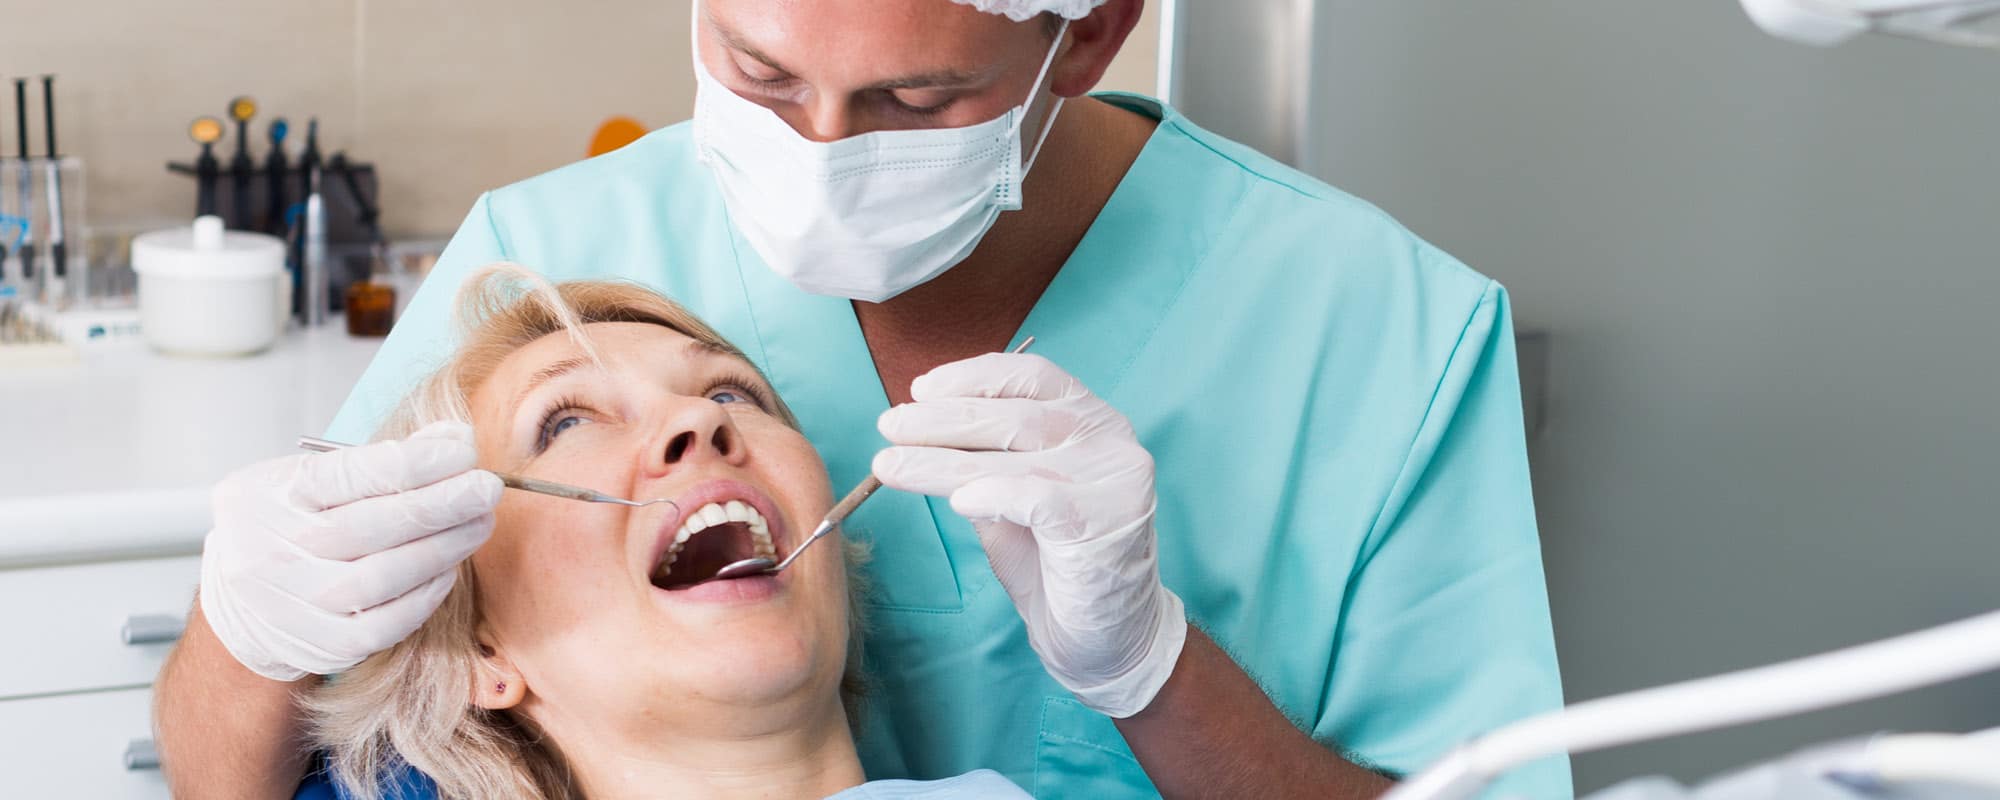 Poco osso per mettere un impianto dentale? Ecco come le tecniche di rigenerazione ossea possono risolvere il problema